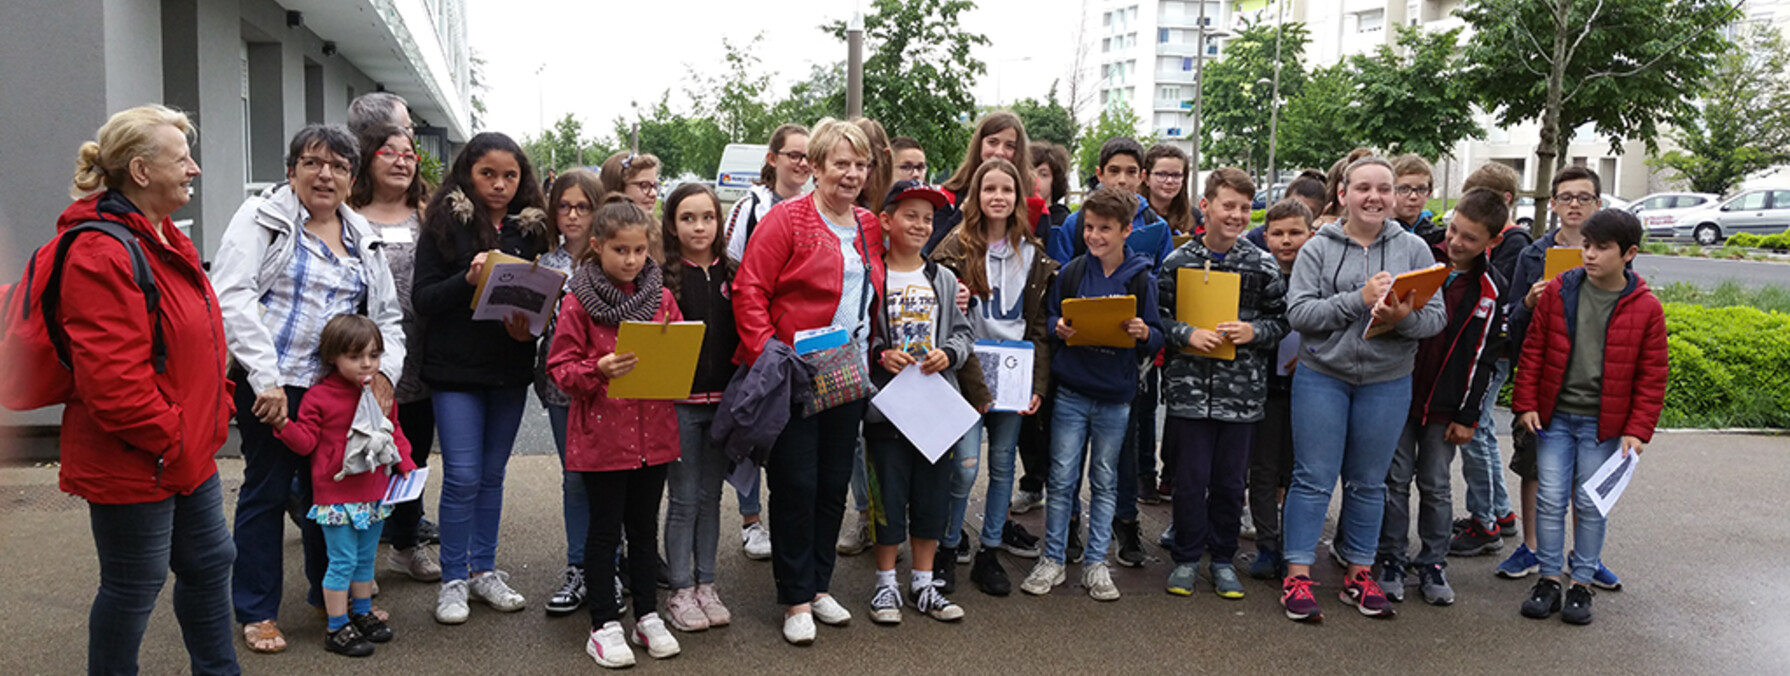 Visite du quartier du Clou-Bouchet par des élèves de Niort Agglo ©IT